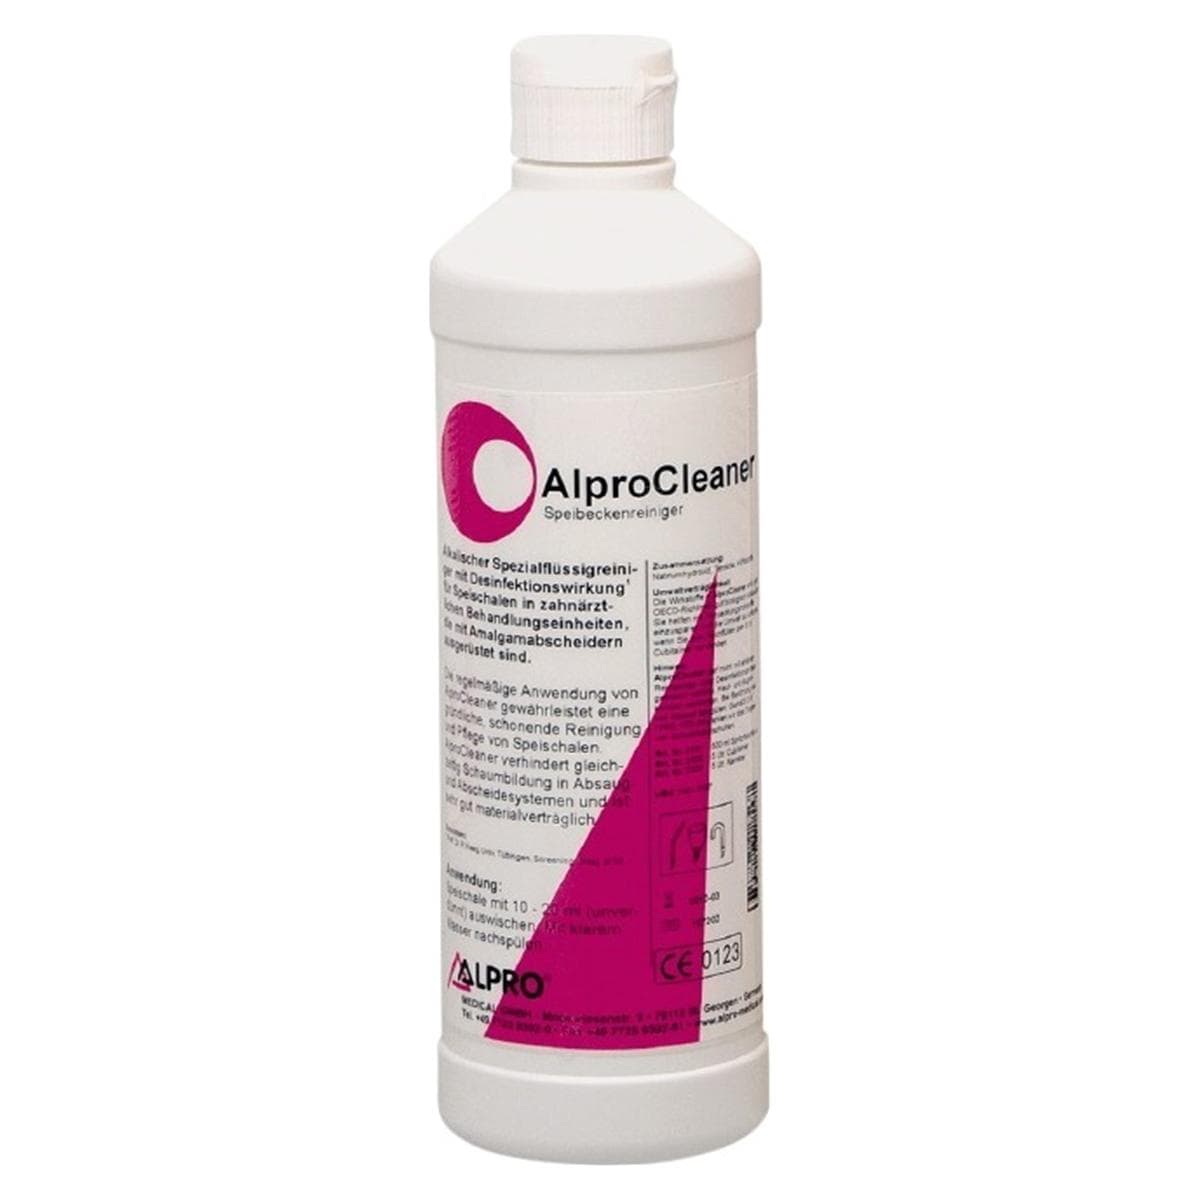 Alpro Cleaner - Verpakking, 6x 500 ml